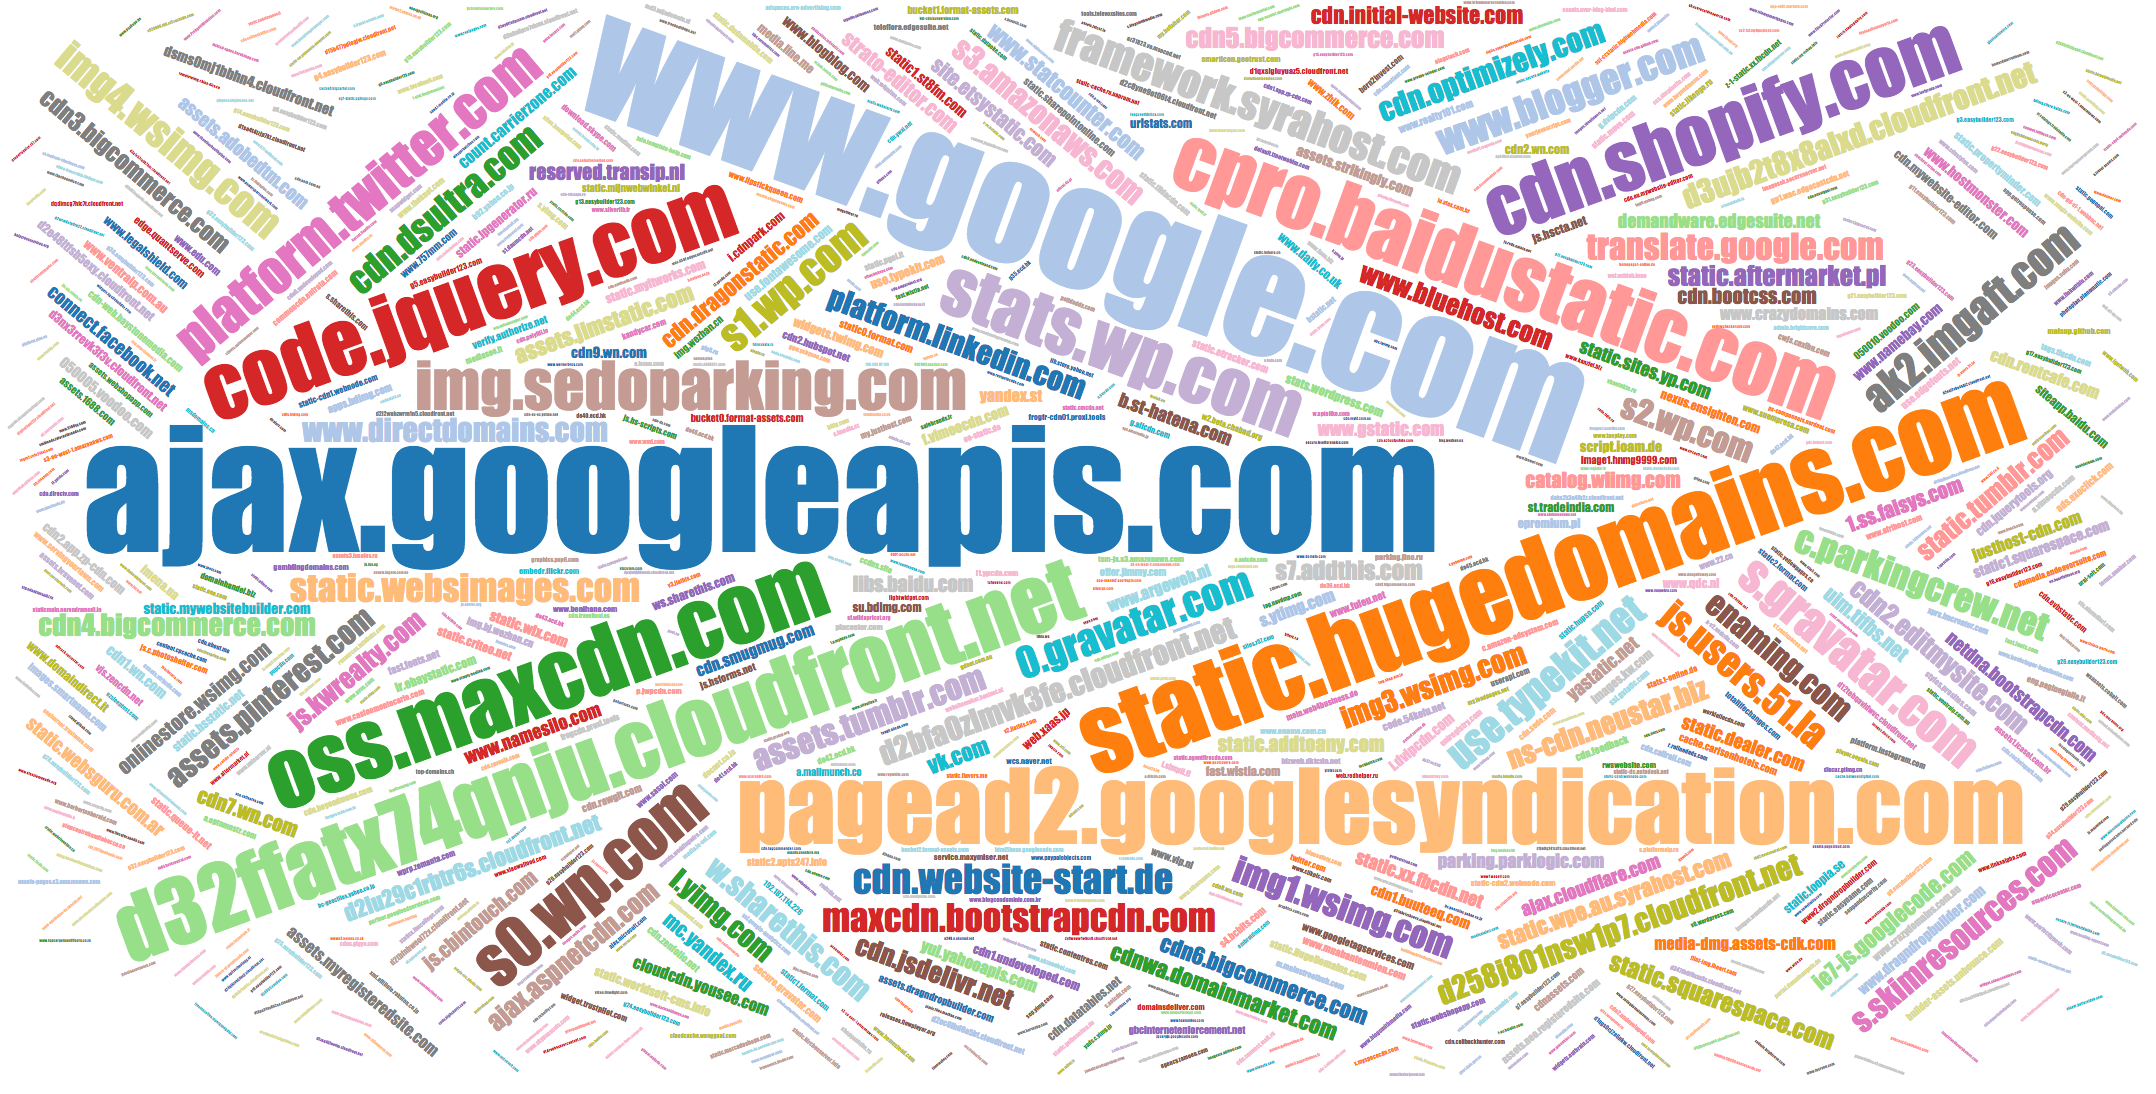 Popular names of JS domains libs.baidu.com, l.yimg.com, etc.